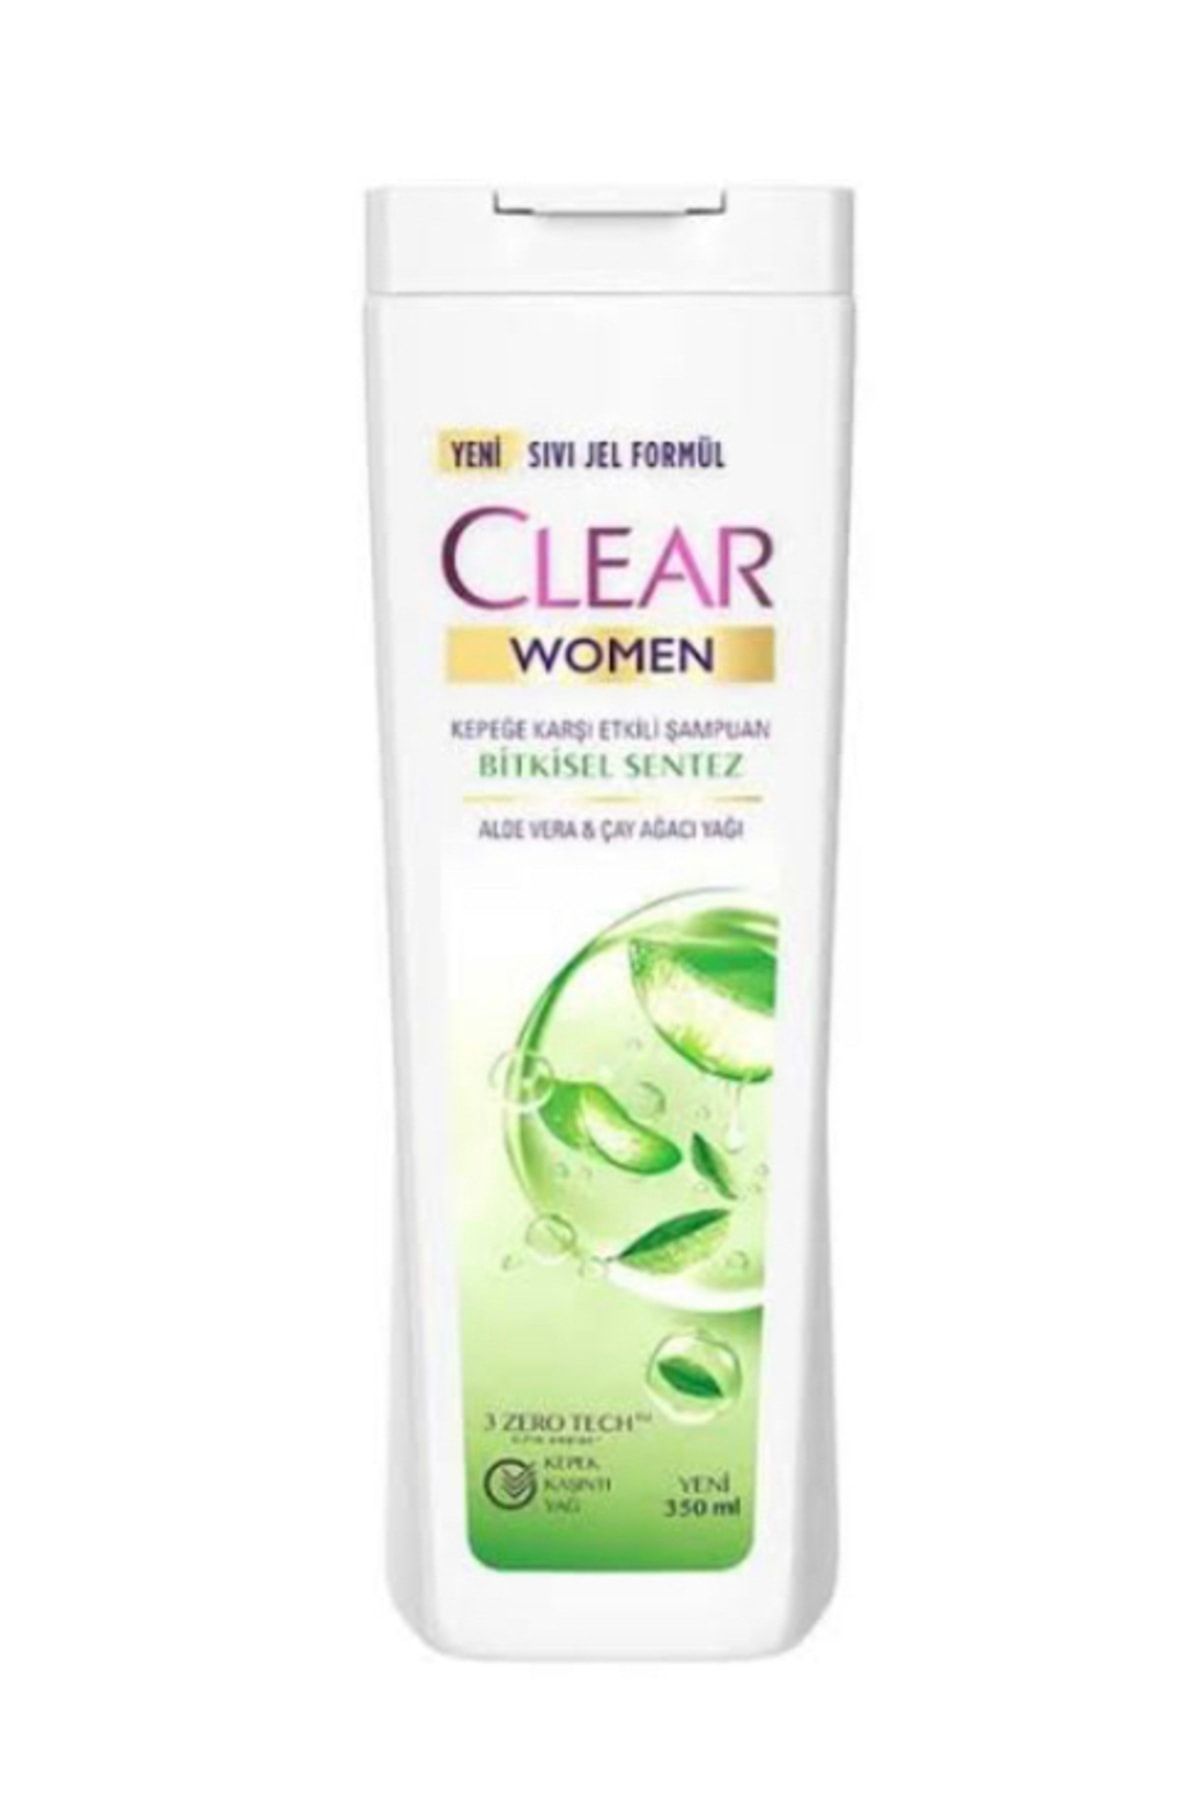 Clear Women Aloe Vera &çay Ağacı Yağı Şampuan 350ml